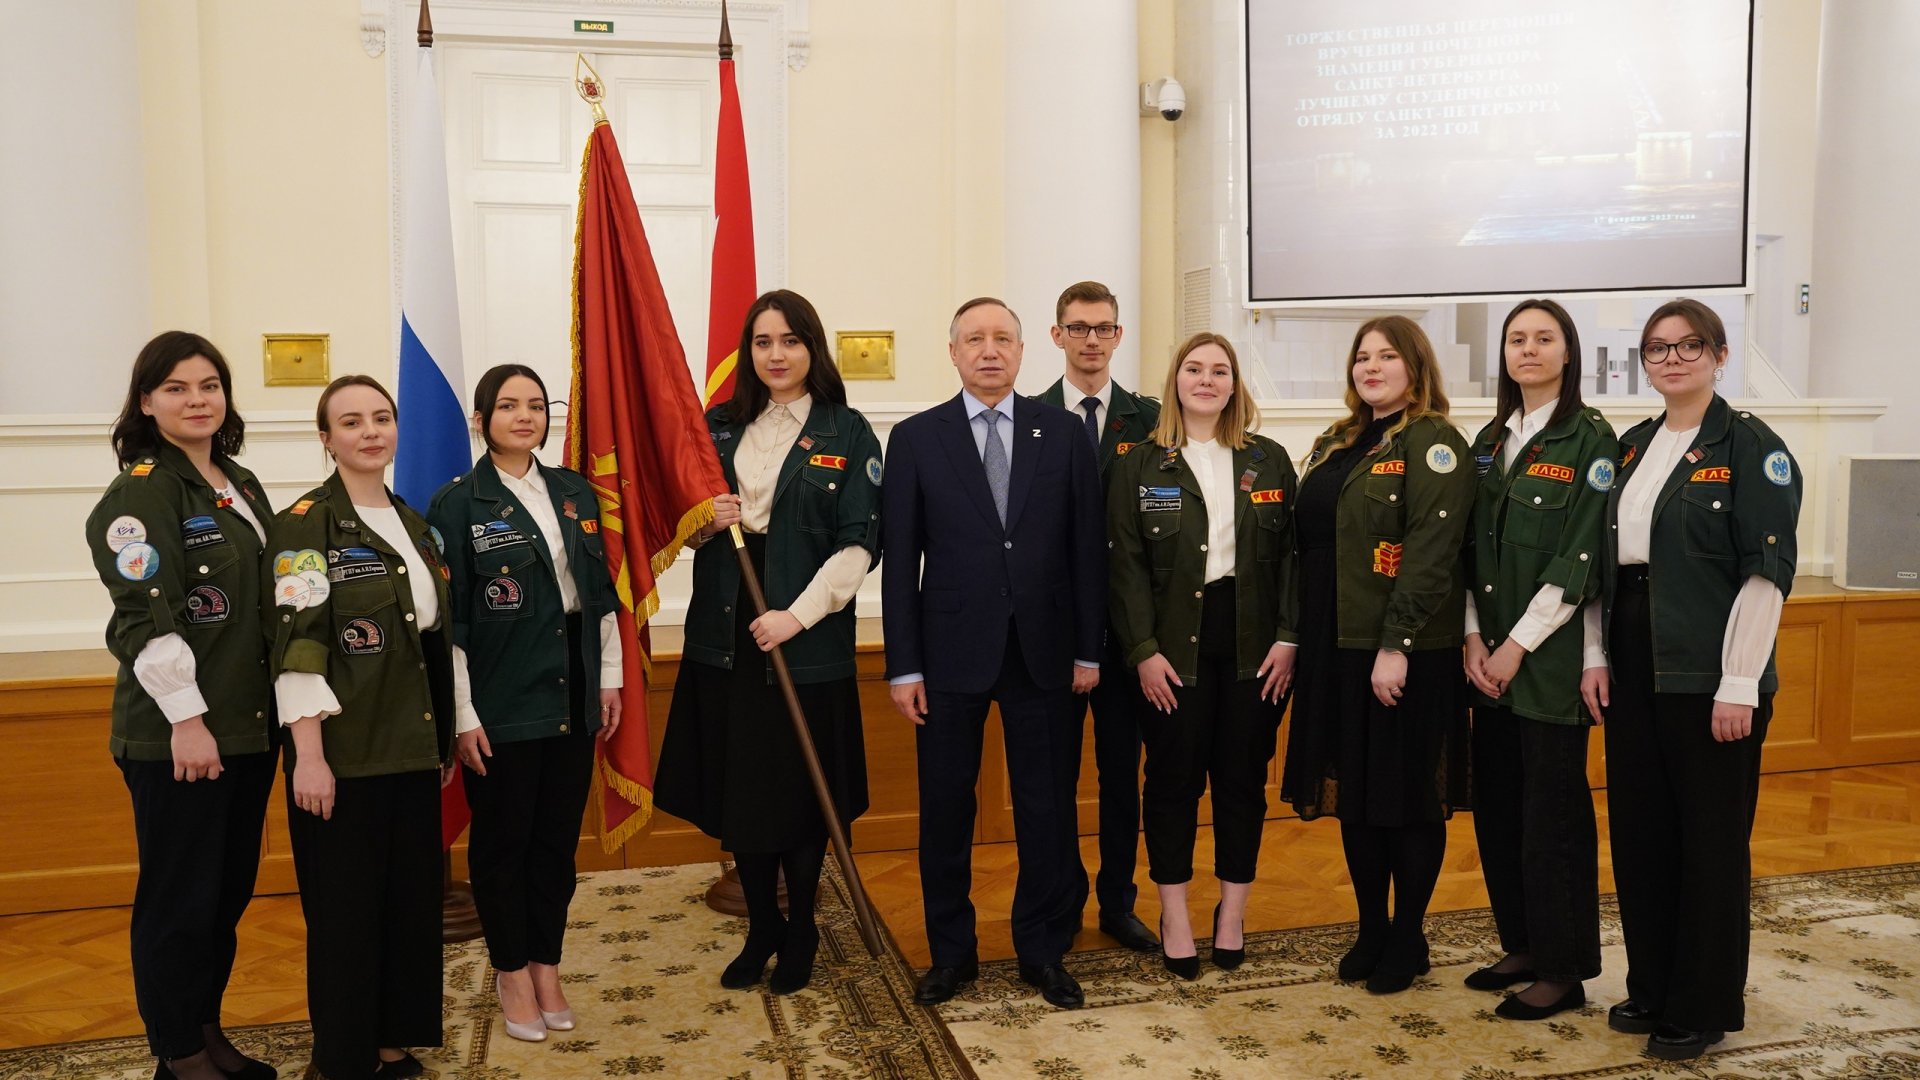 Лучшему студенческому отряду Санкт-Петербурга вручили Почётное знамя Губернатора